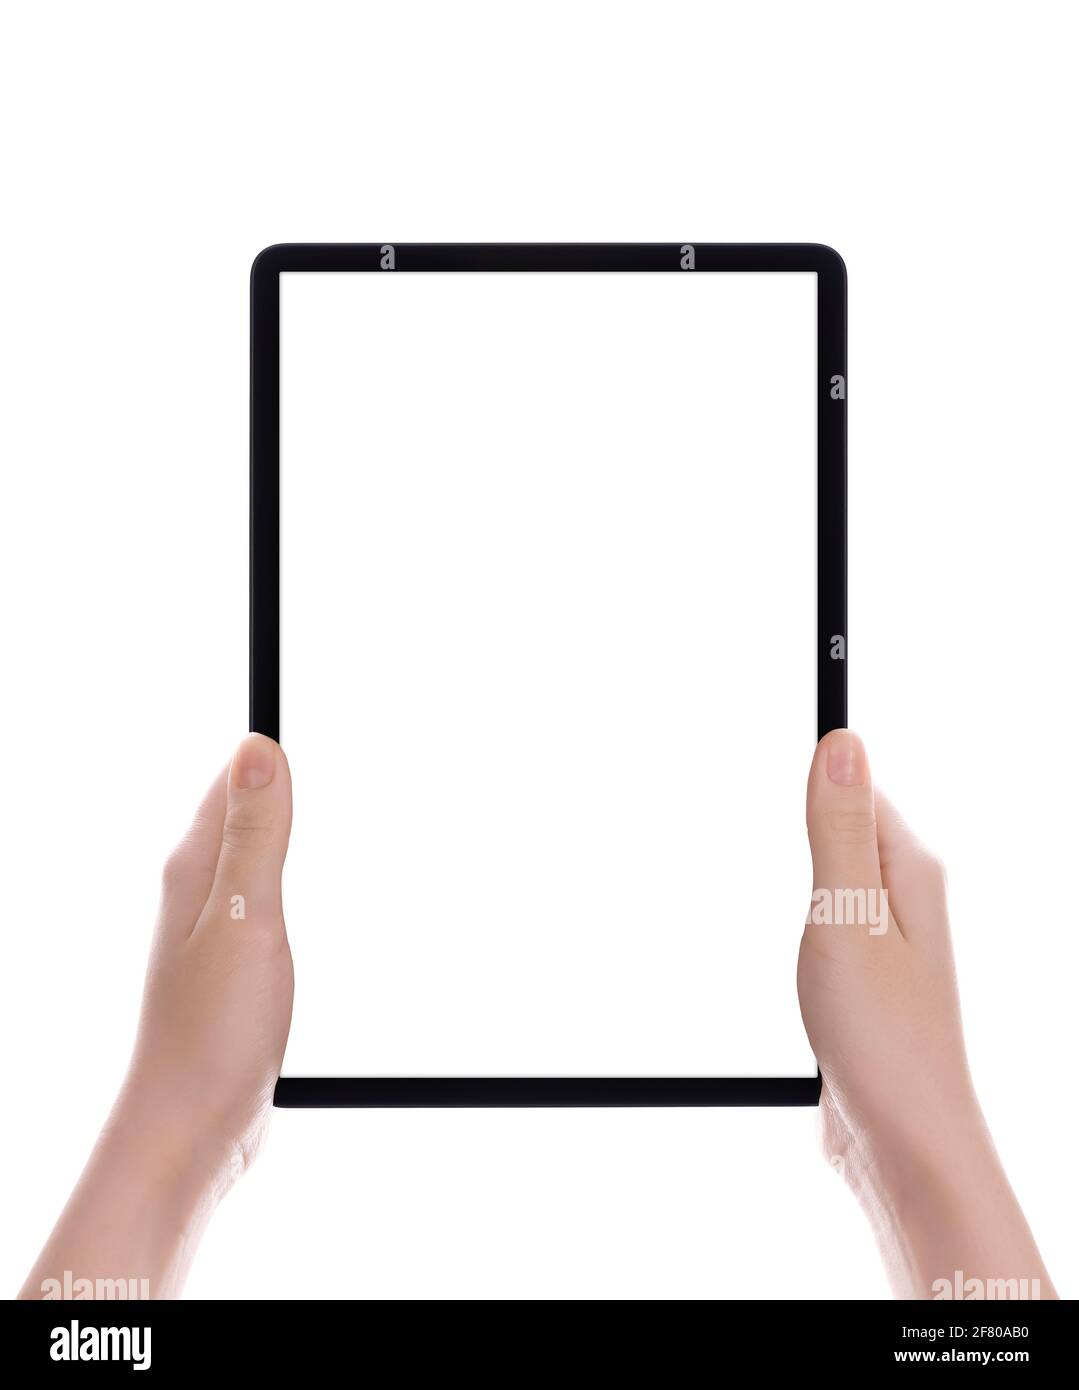 Hände, die einen Tablet-Computer mit weißem Bildschirm halten. Weibliche Hände zeigen leeren Bildschirm des modernen digitalen Tablets. Tablet-pc mit Handhaltung, isoliert auf Weiß Stockfoto